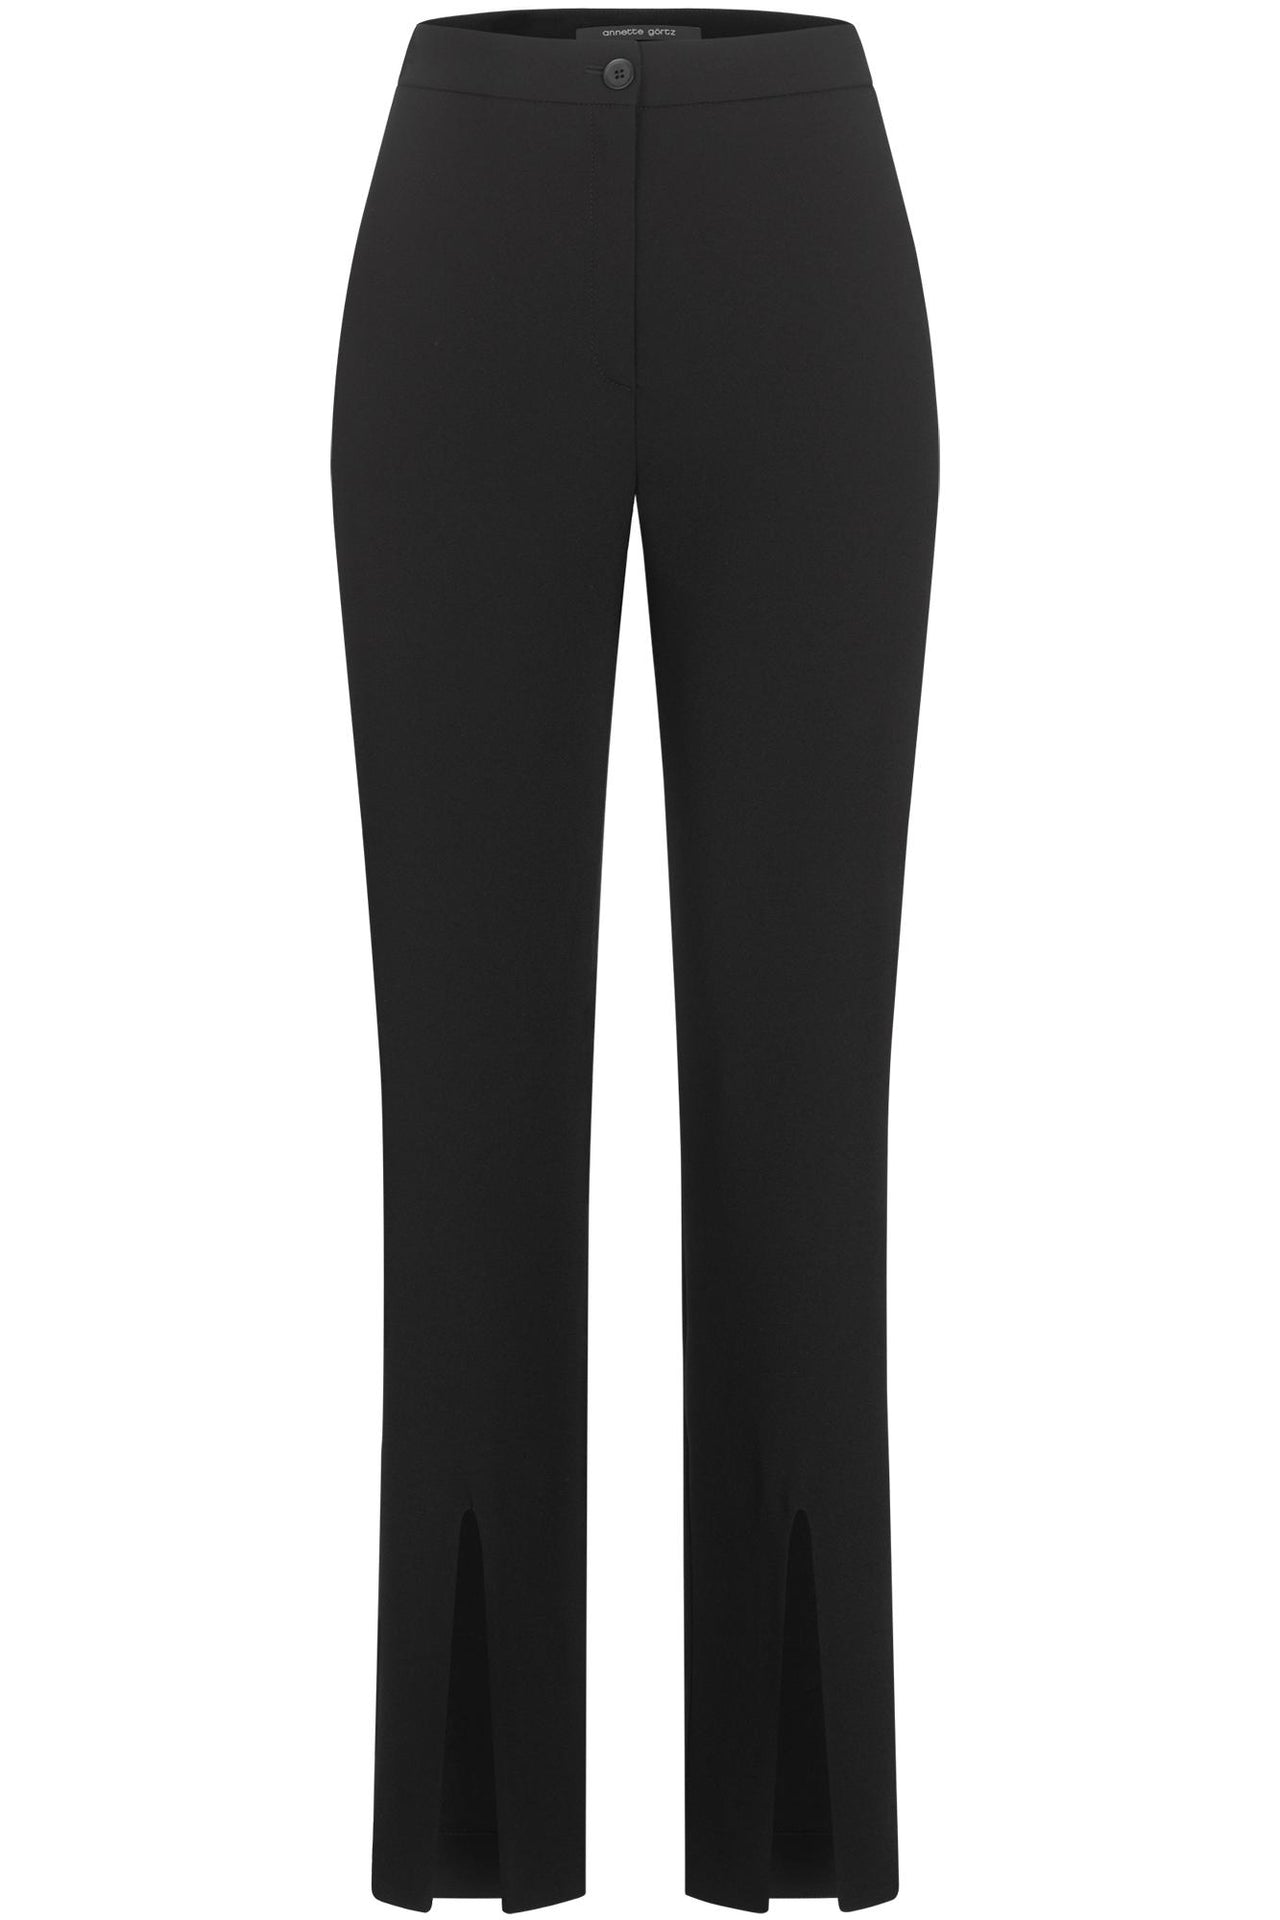 Felo Pants in Black-Pants-Annette Gortz-Debs Boutique